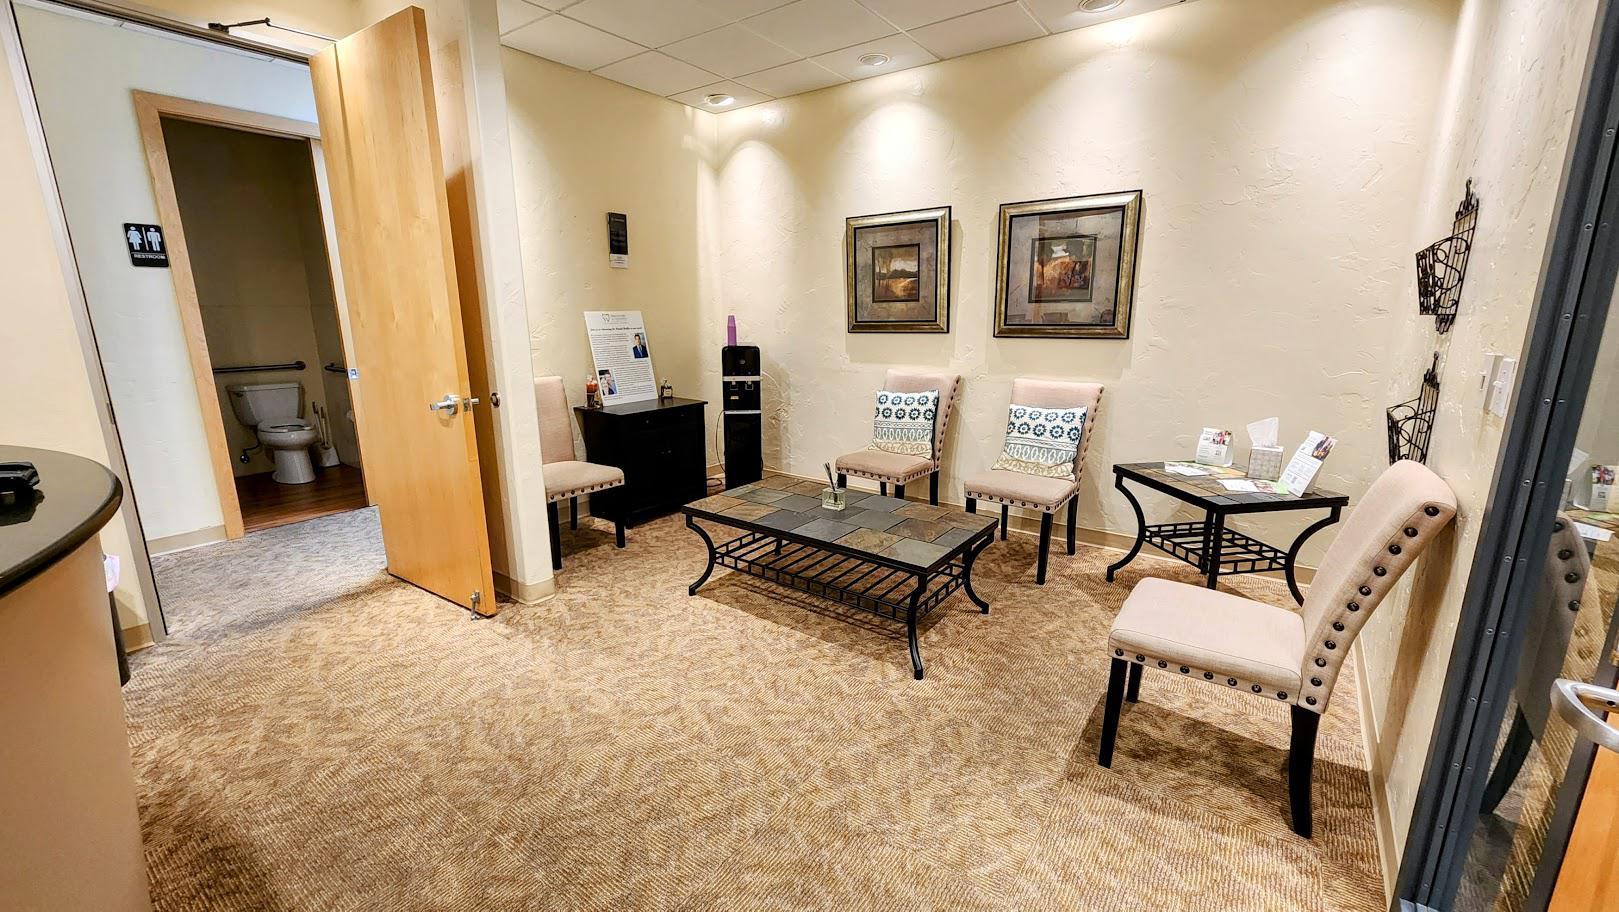 Reception area of Belmar dentist office in Lakewood, CO